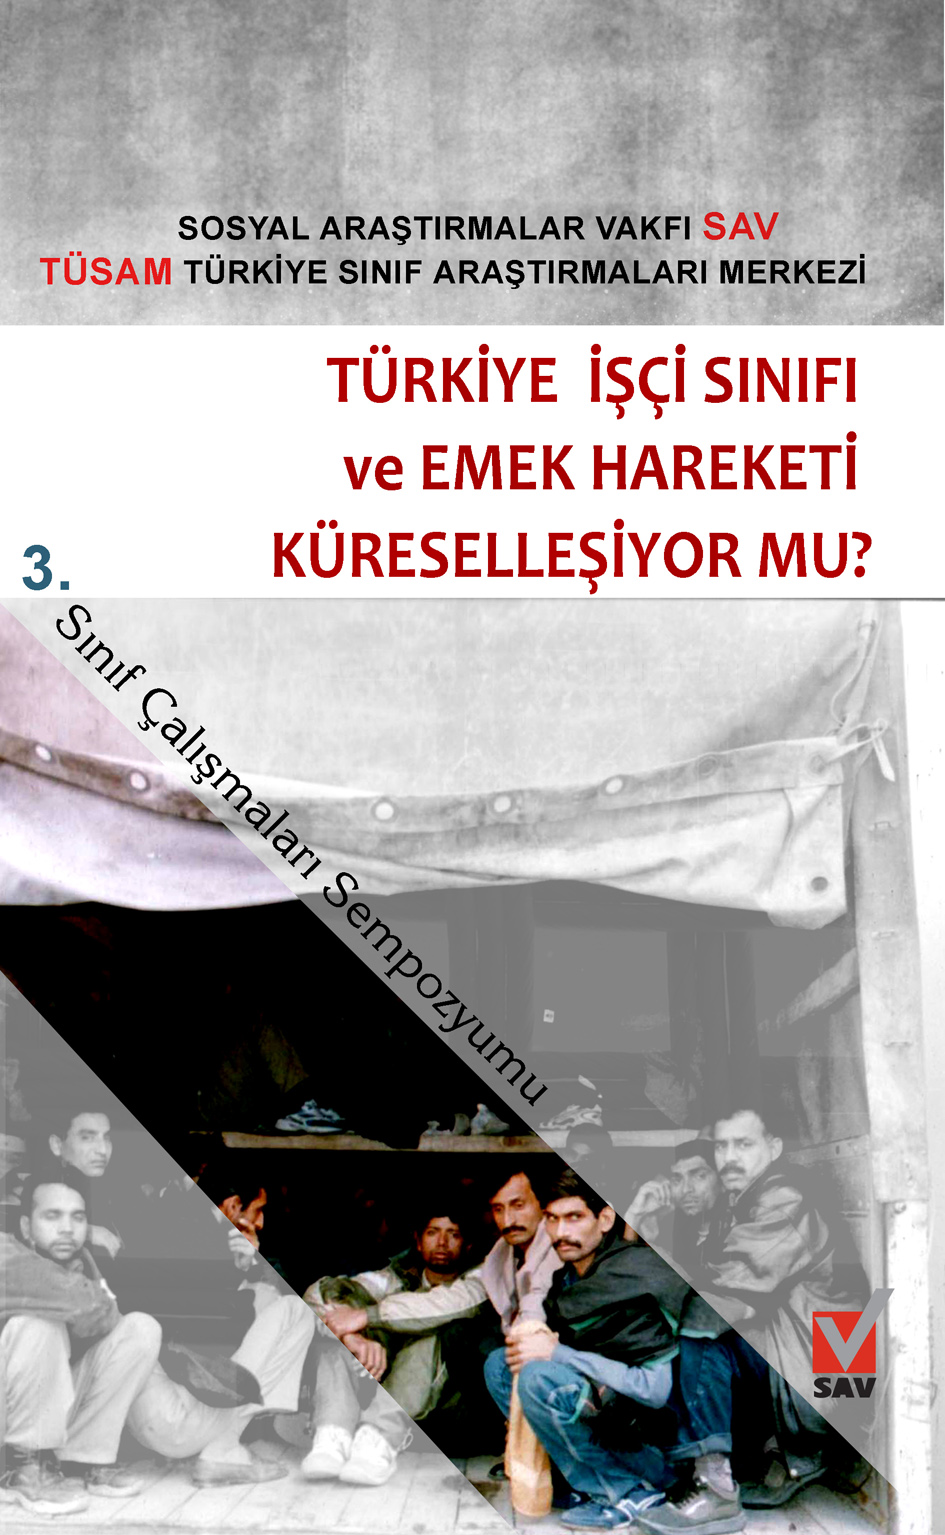 3. Sınıf Çalışmaları Sempozyumu: Türkiye İşçi Sınıfı ve Emek Hareketi Küreselleşiyor mu?